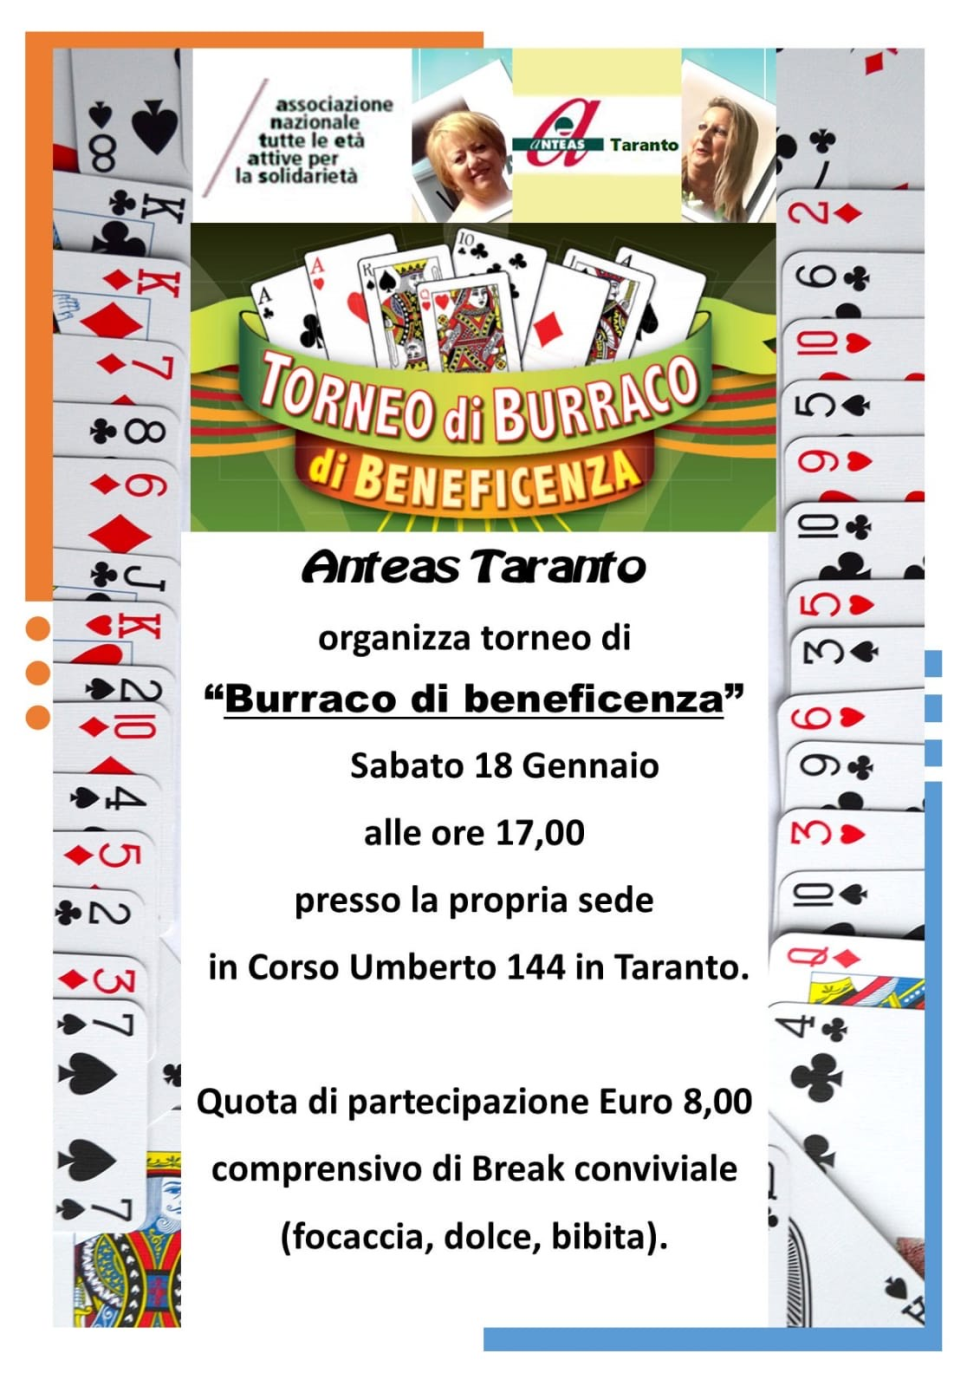  Torneo di burraco per beneficienza organizzato da Anteas Taranto.